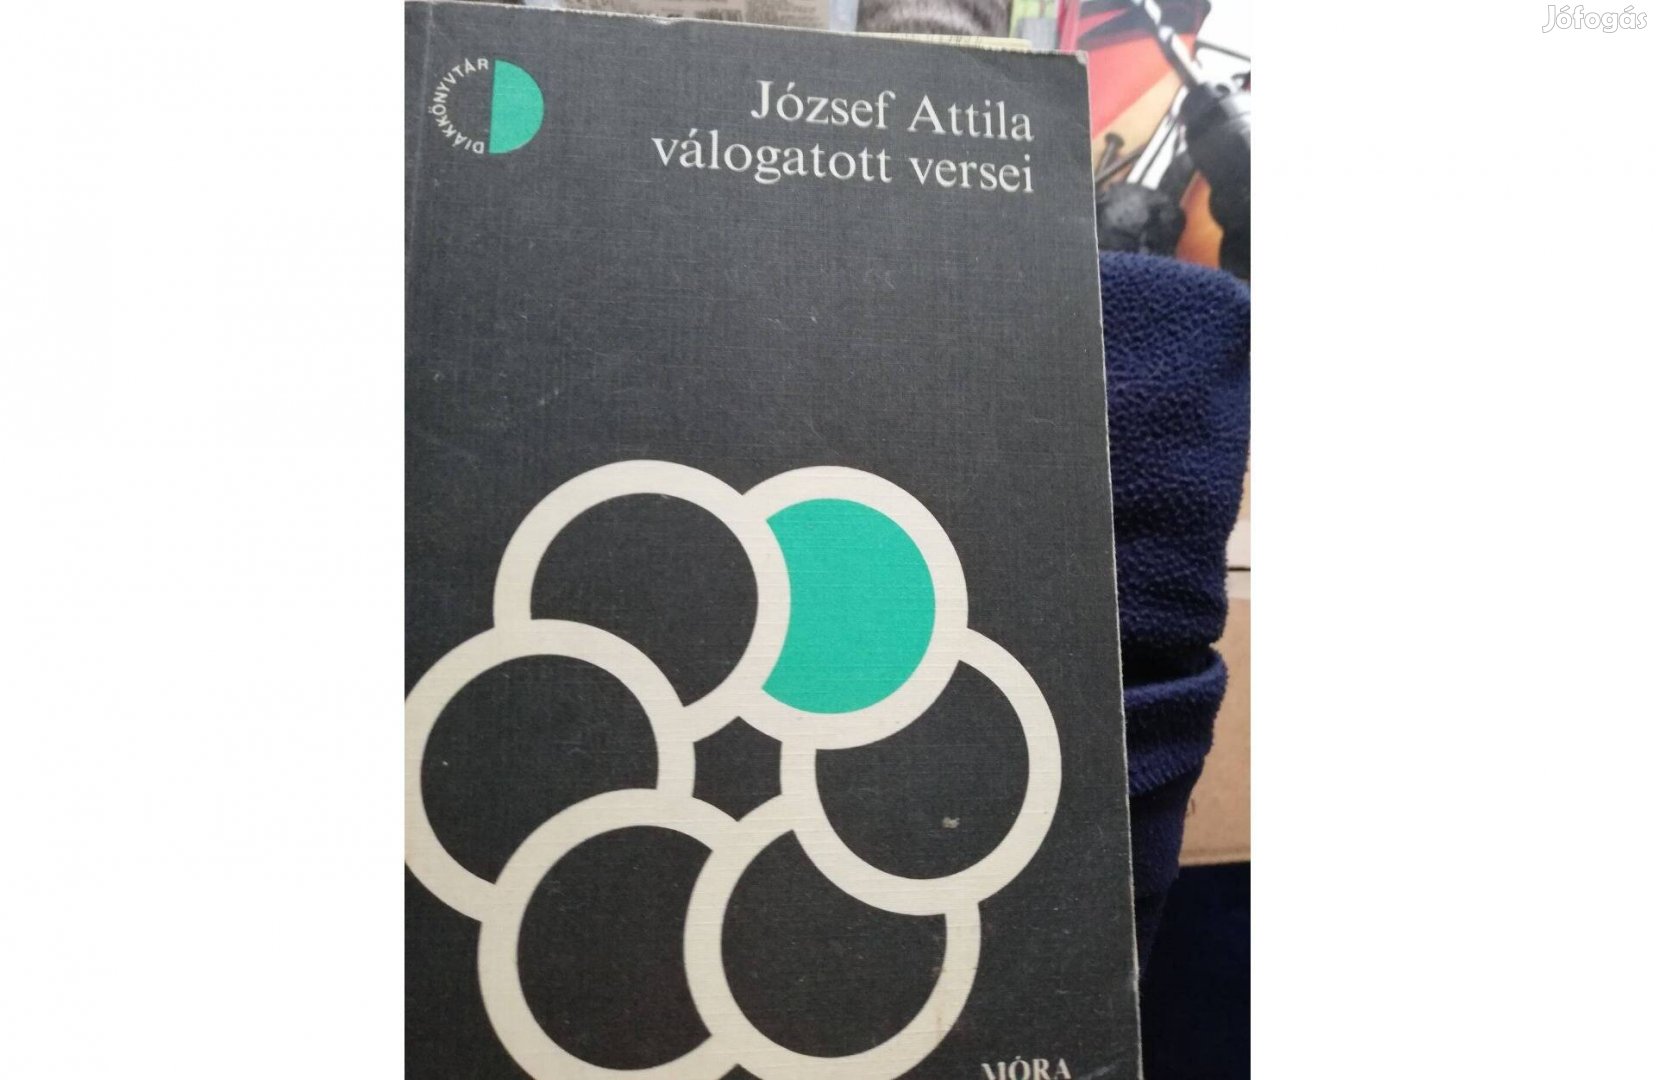 József Attila - Válogatott versei - Móra kiadó